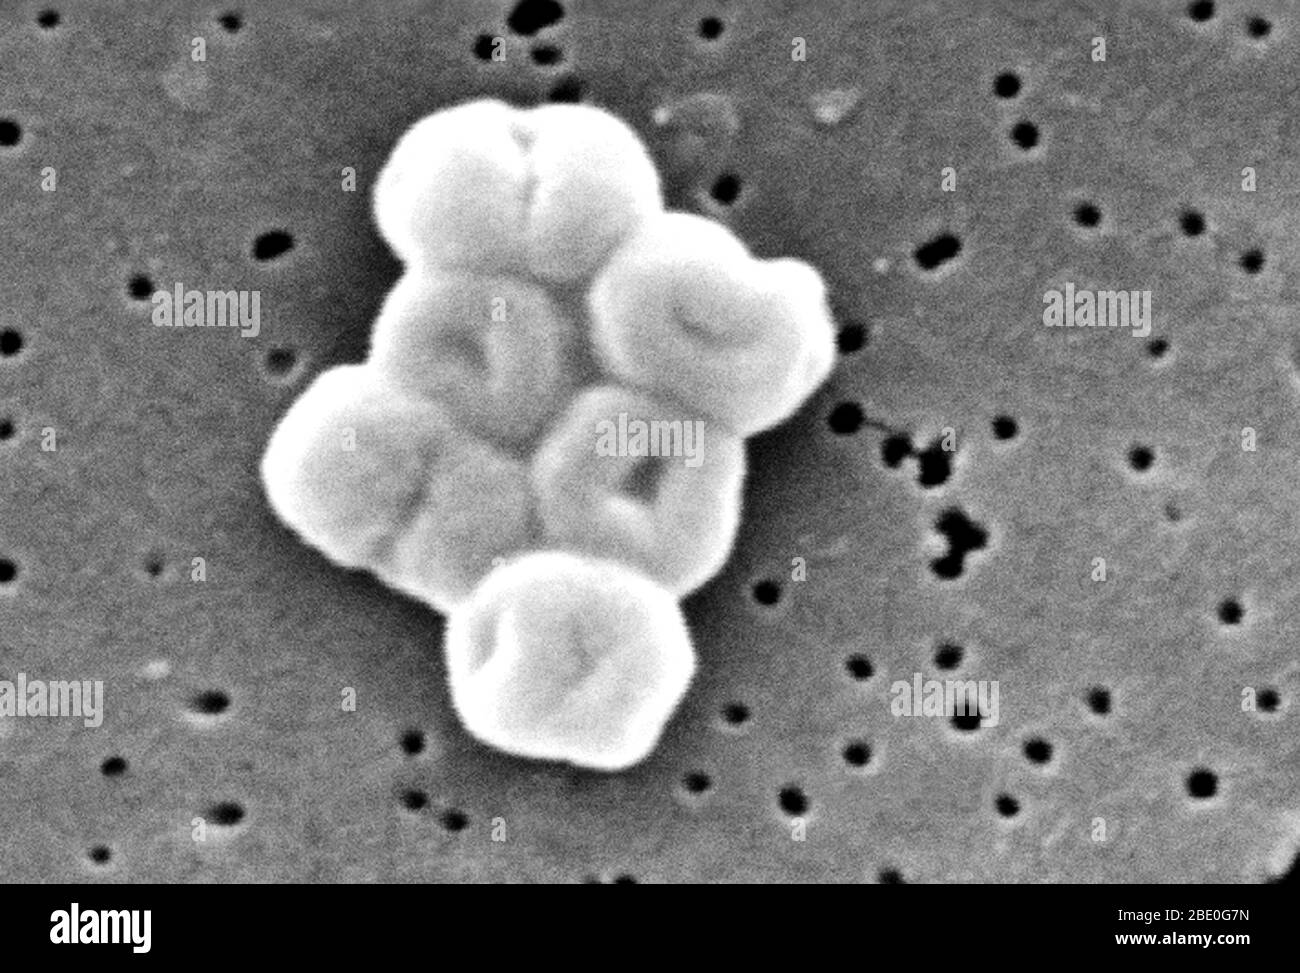 Ce mes représente un groupe fortement amplifié de bactéries Gram-négatives, non motiles Acinetobacter baumannii; Mag - 27600x. Les membres du genre Acinetobacter sont des tiges non motiles, de 1 à 1,5 µm de diamètre et de 1,5 à 2,5 µm de longueur, qui deviennent sphériques en forme pendant leur phase stationnaire de croissance. Acinetobacter spp. Sont largement distribués dans la nature et sont une flore normale sur la peau. Certains membres du genre sont importants parce qu'ils sont une cause émergente d'infections pulmonaires acquises à l'hôpital, c'est-à-dire les pneumoniae, les infections hémopathiques et les infections de la plaie. Banque D'Images